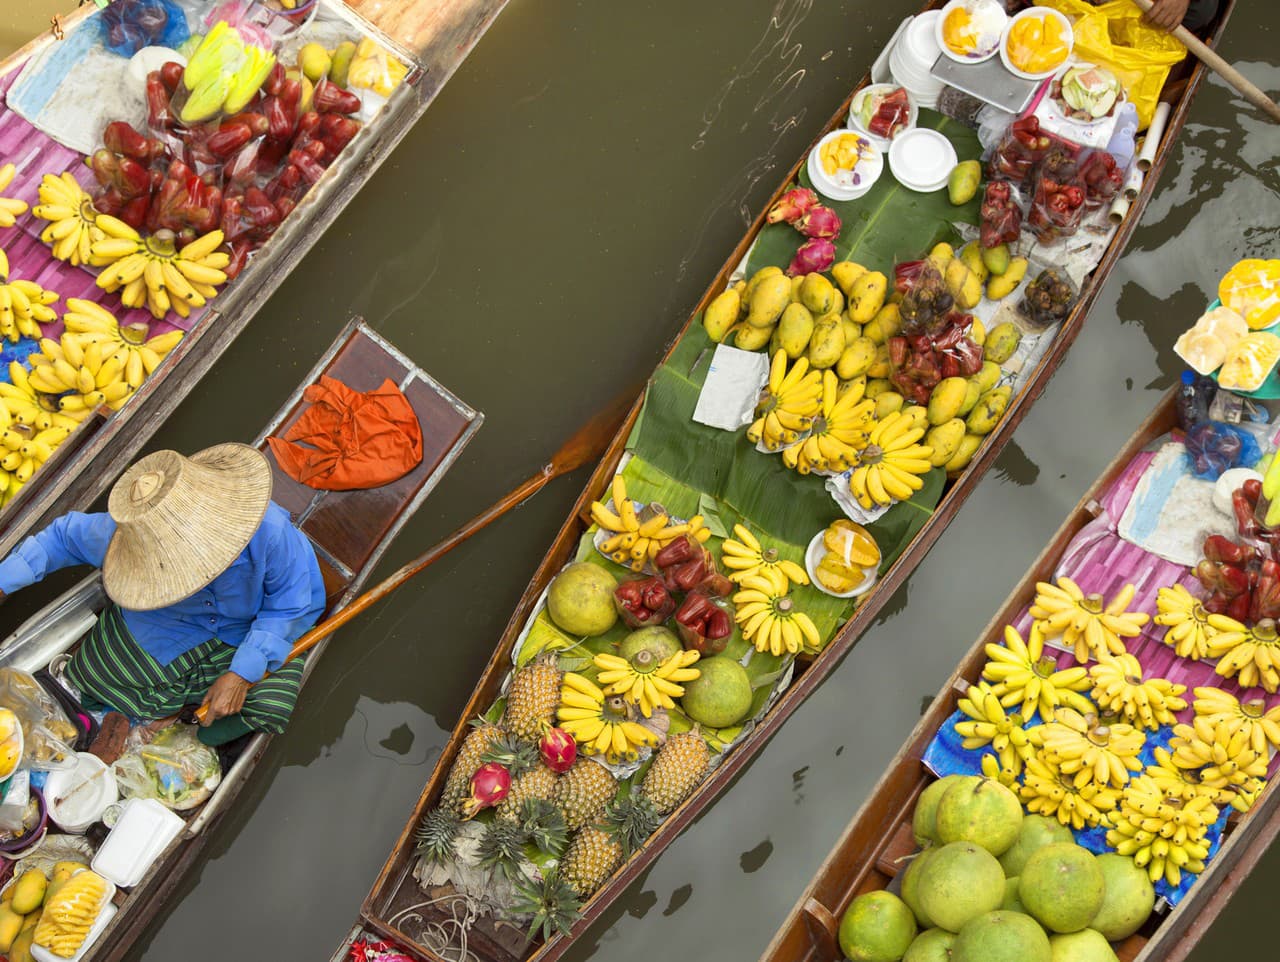 Plávajúci trh v Bangkoku, Thajsko